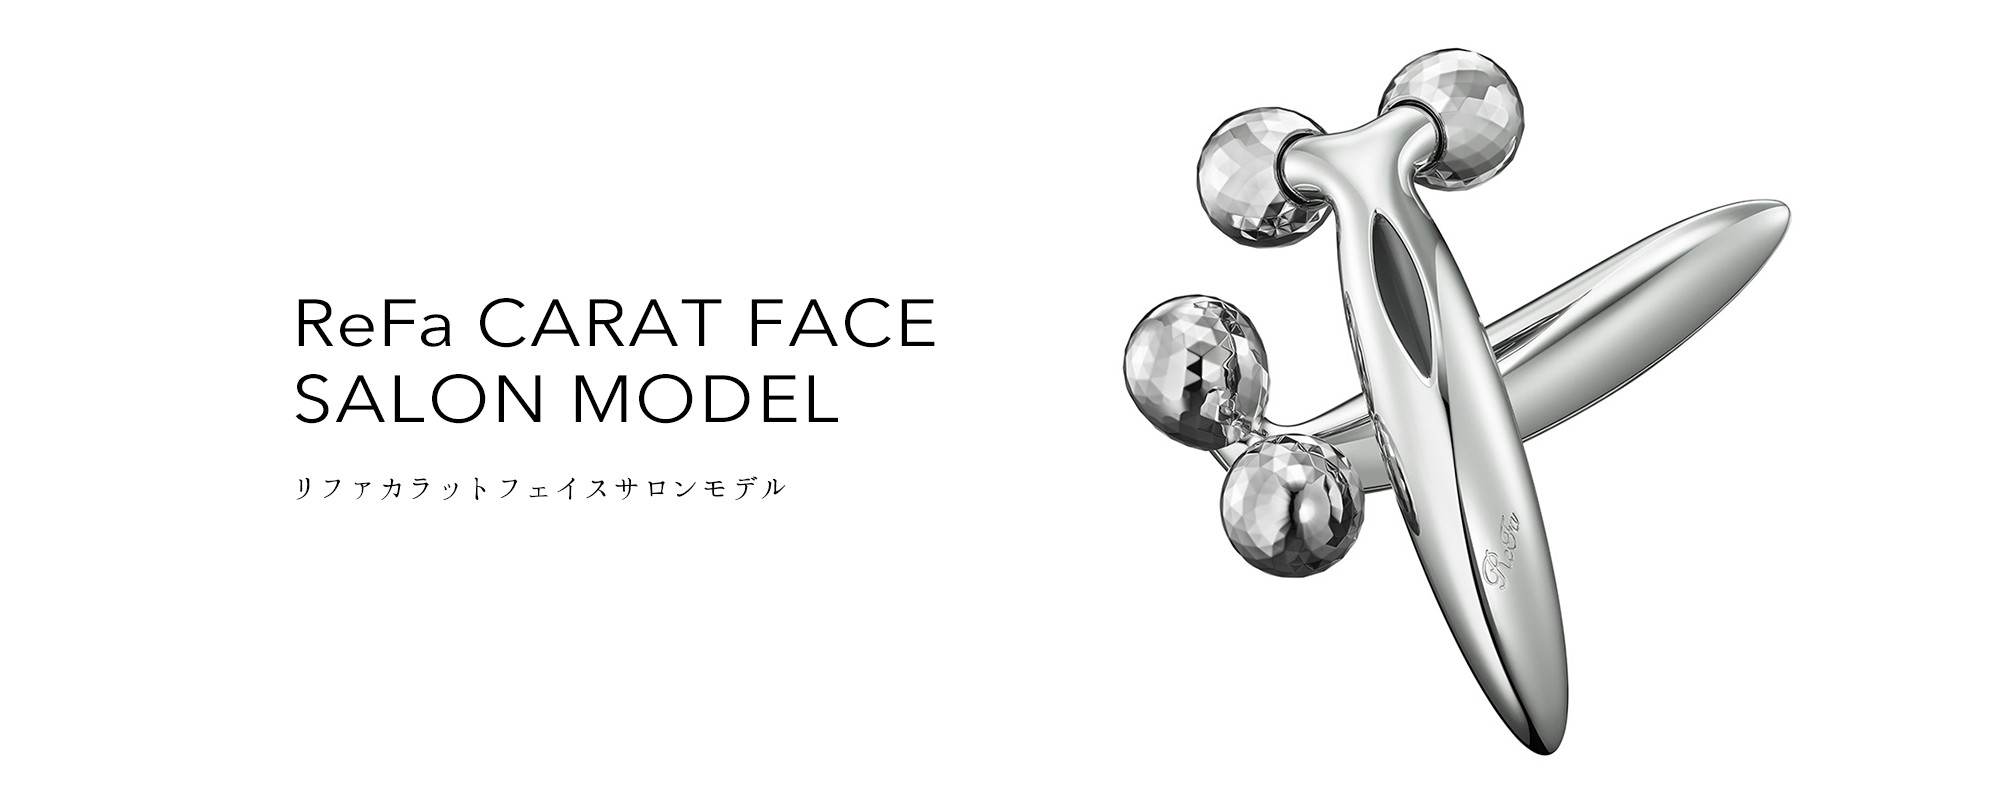 リファカラットフェイスサロンモデル - ReFa CARAT FACE SALON MODEL ...